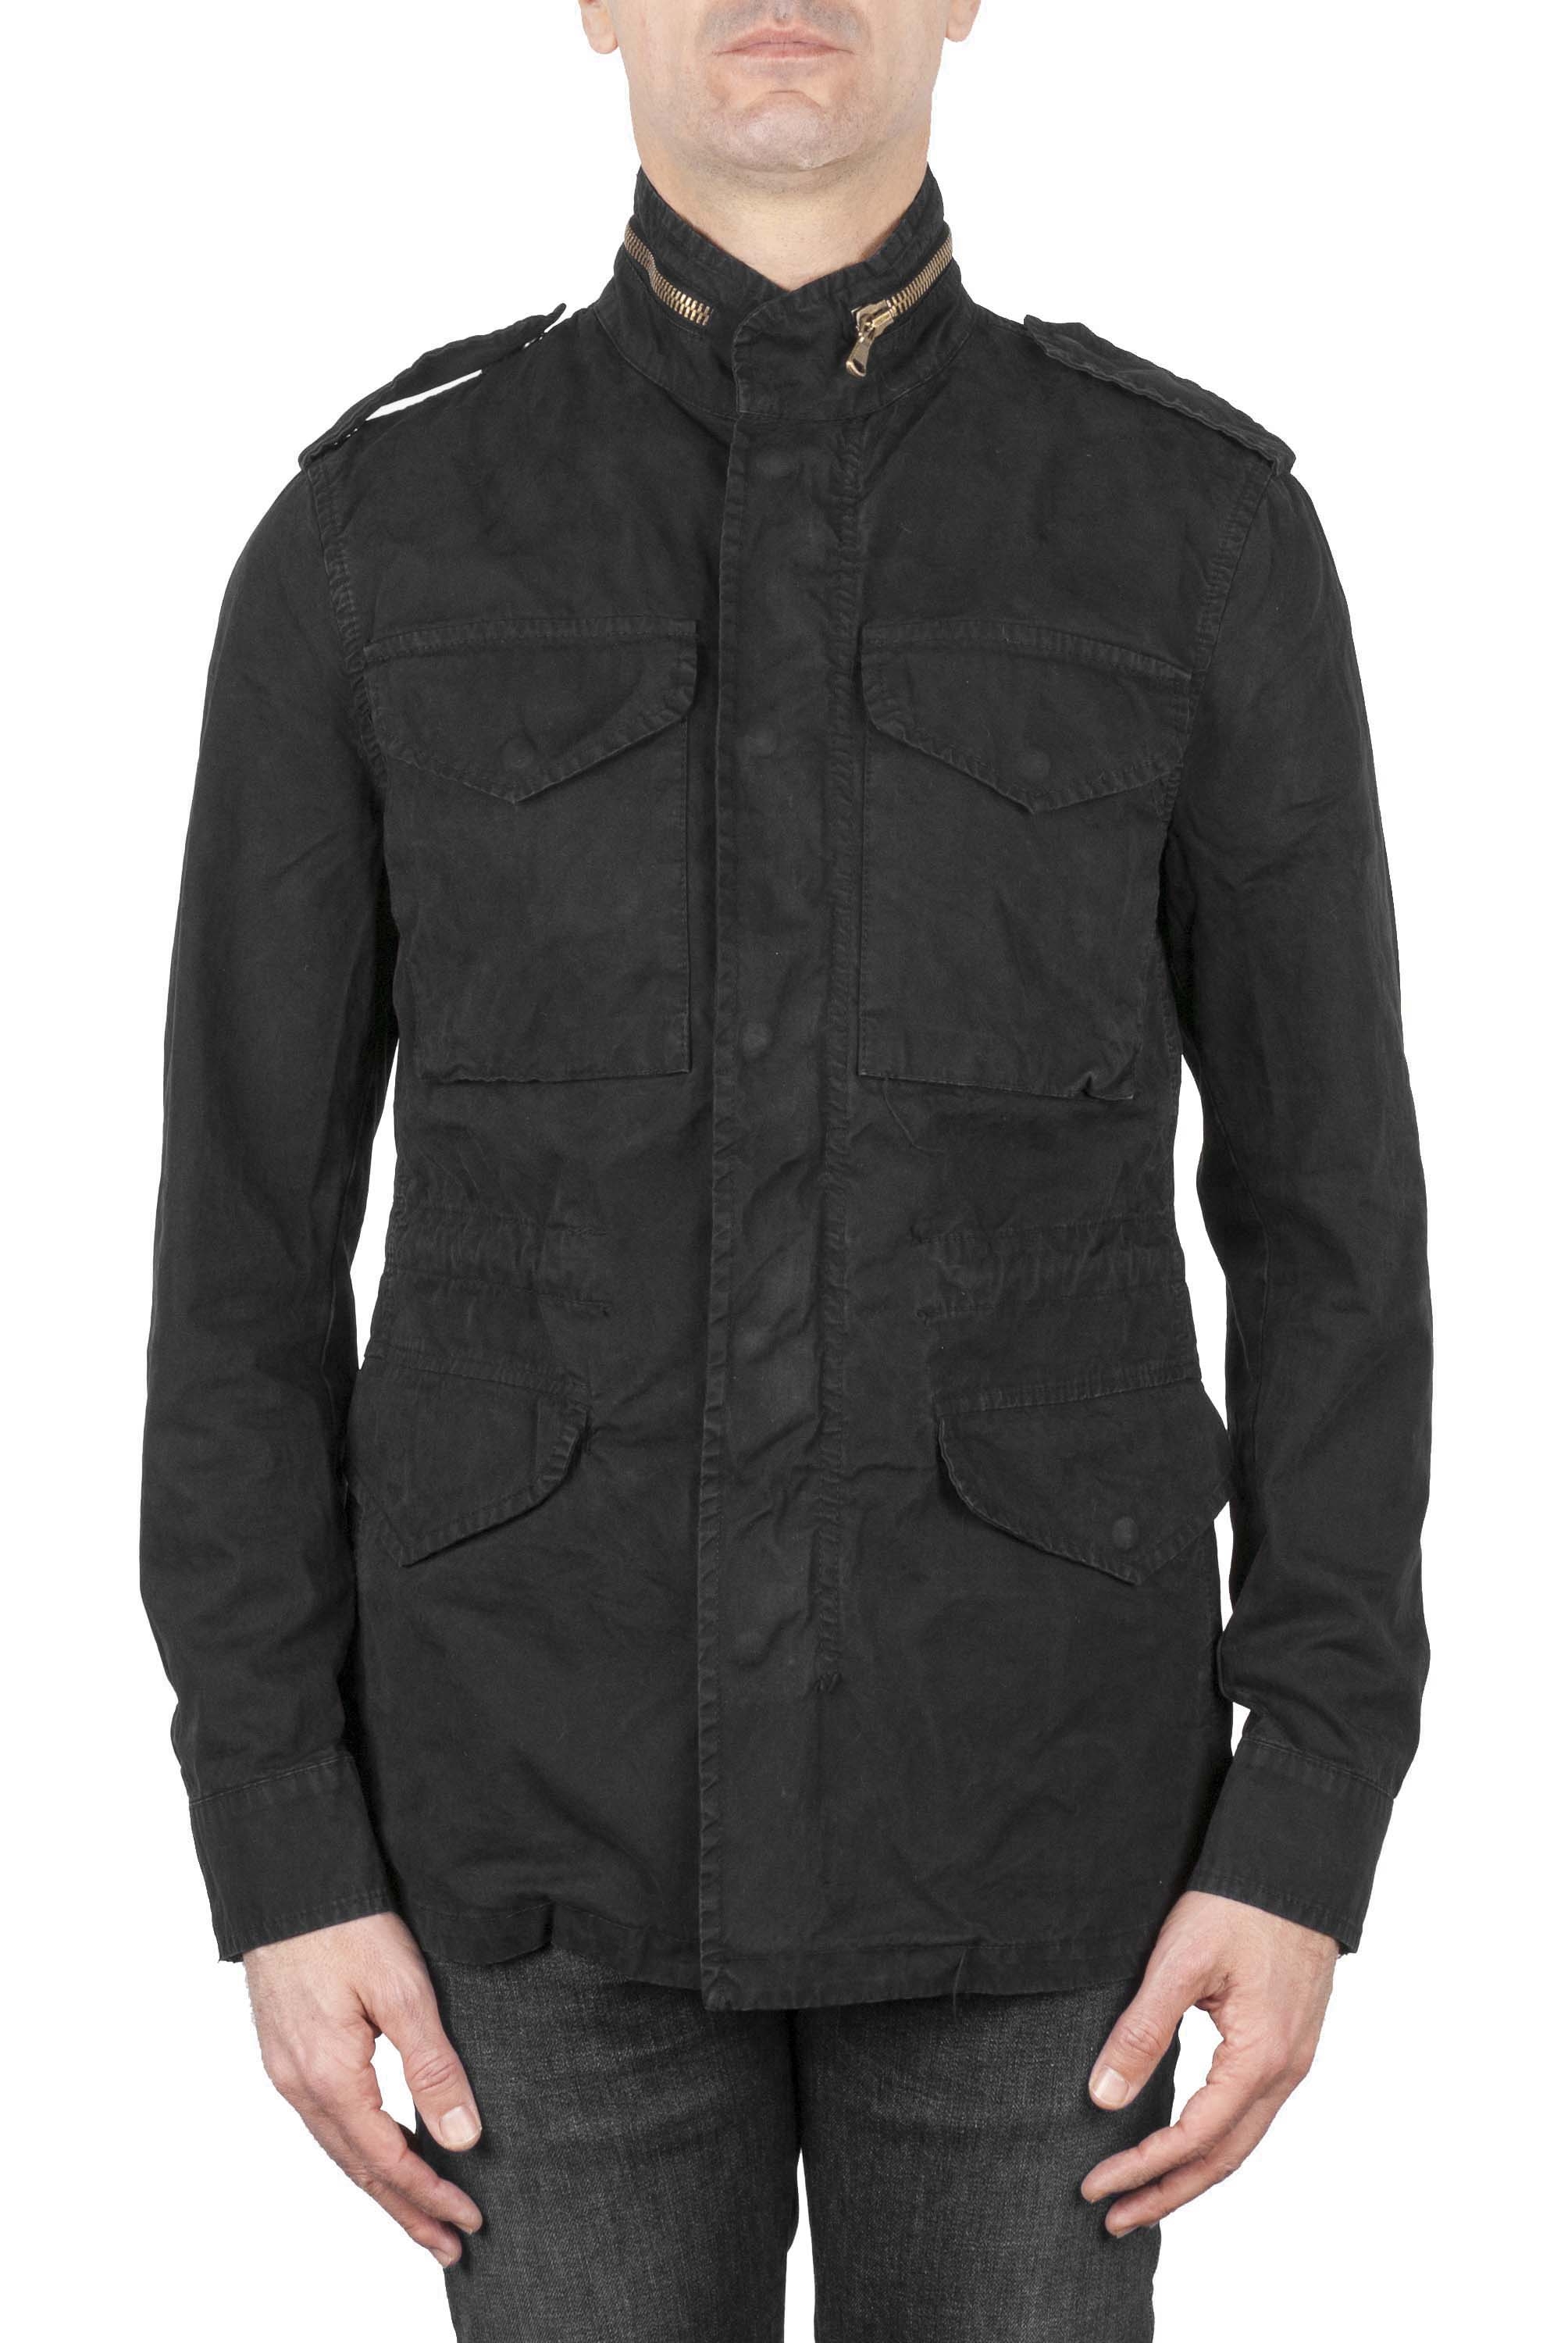 SBU 01104 Cotton field jacket 01